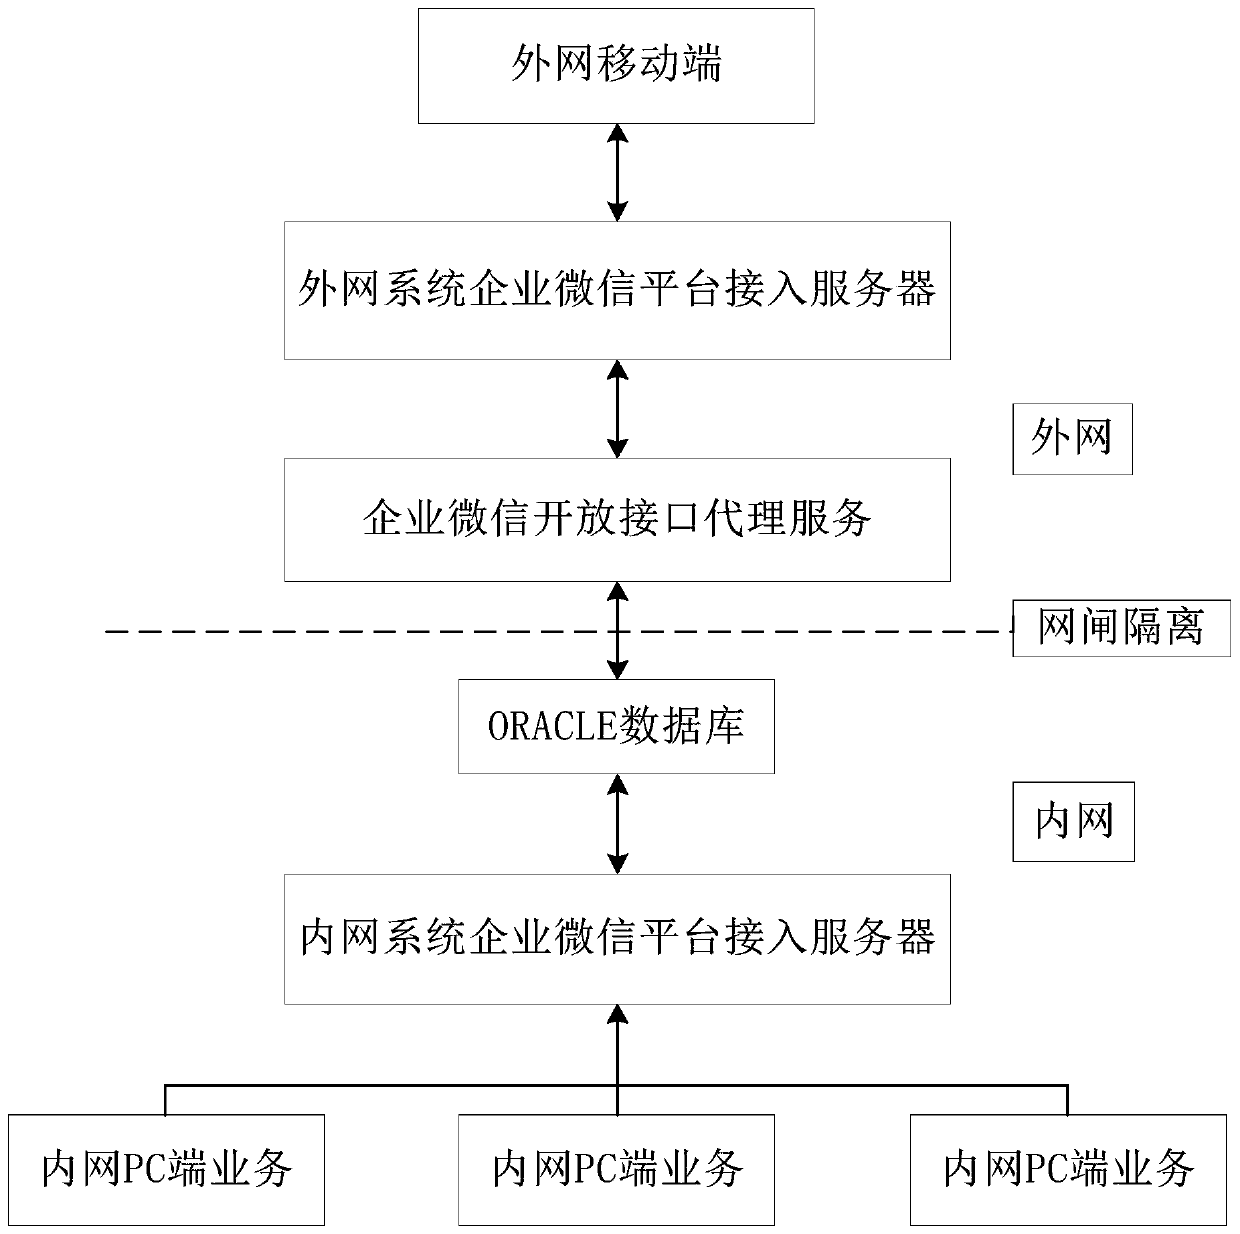 Mobile comprehensive office system based on enterprise WeChat